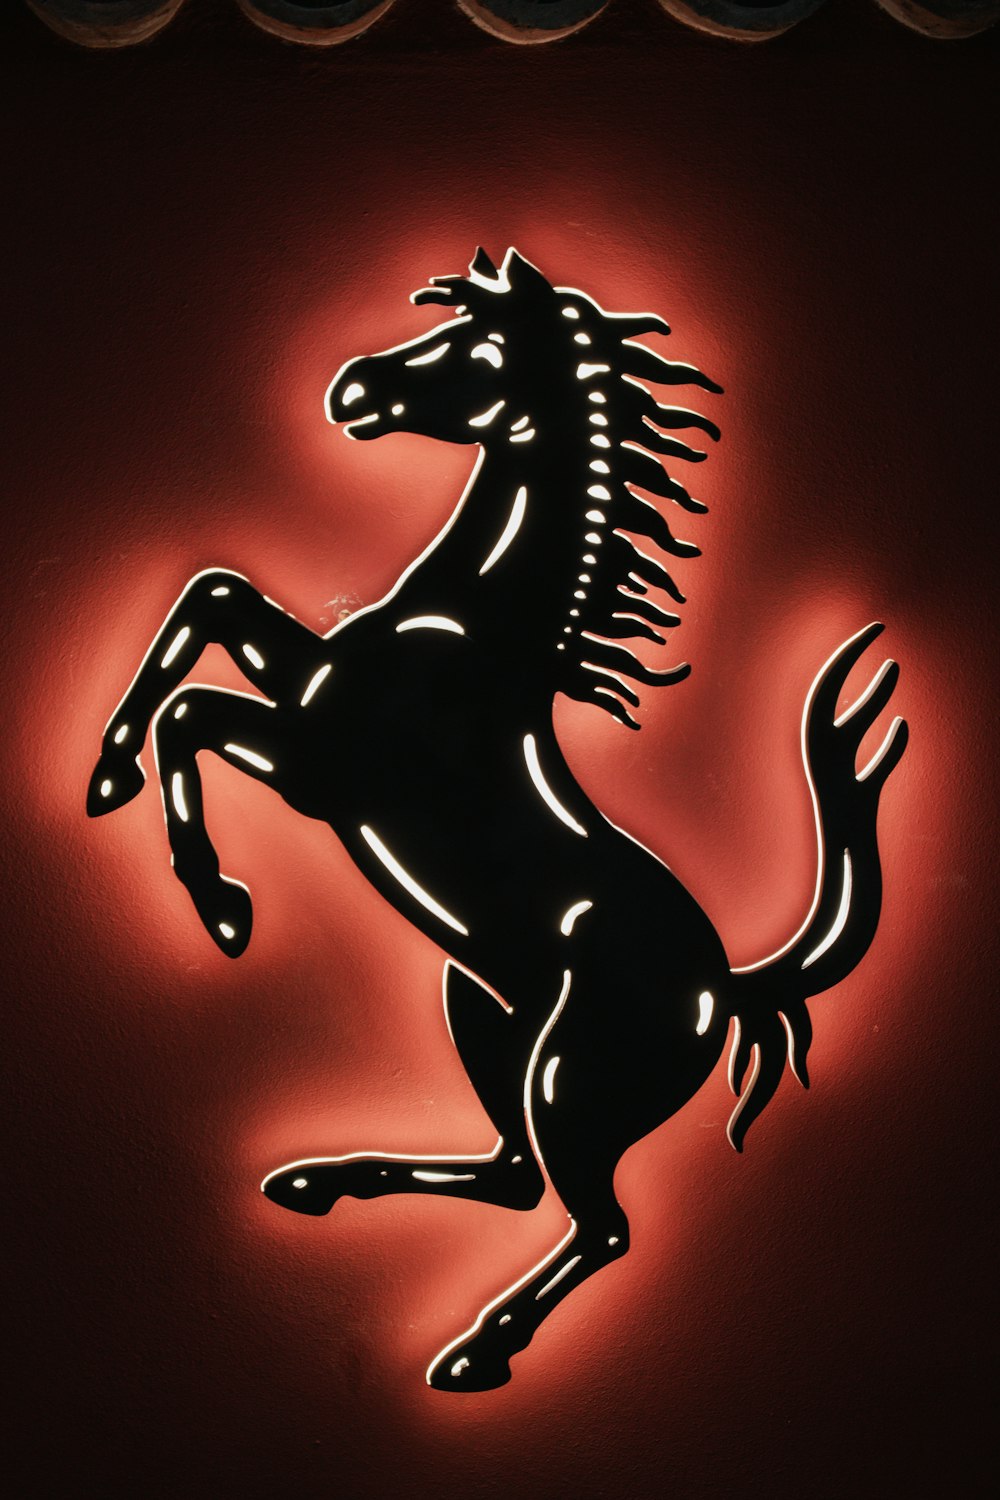 Um logotipo preto e vermelho da Ferrari em uma parede vermelha